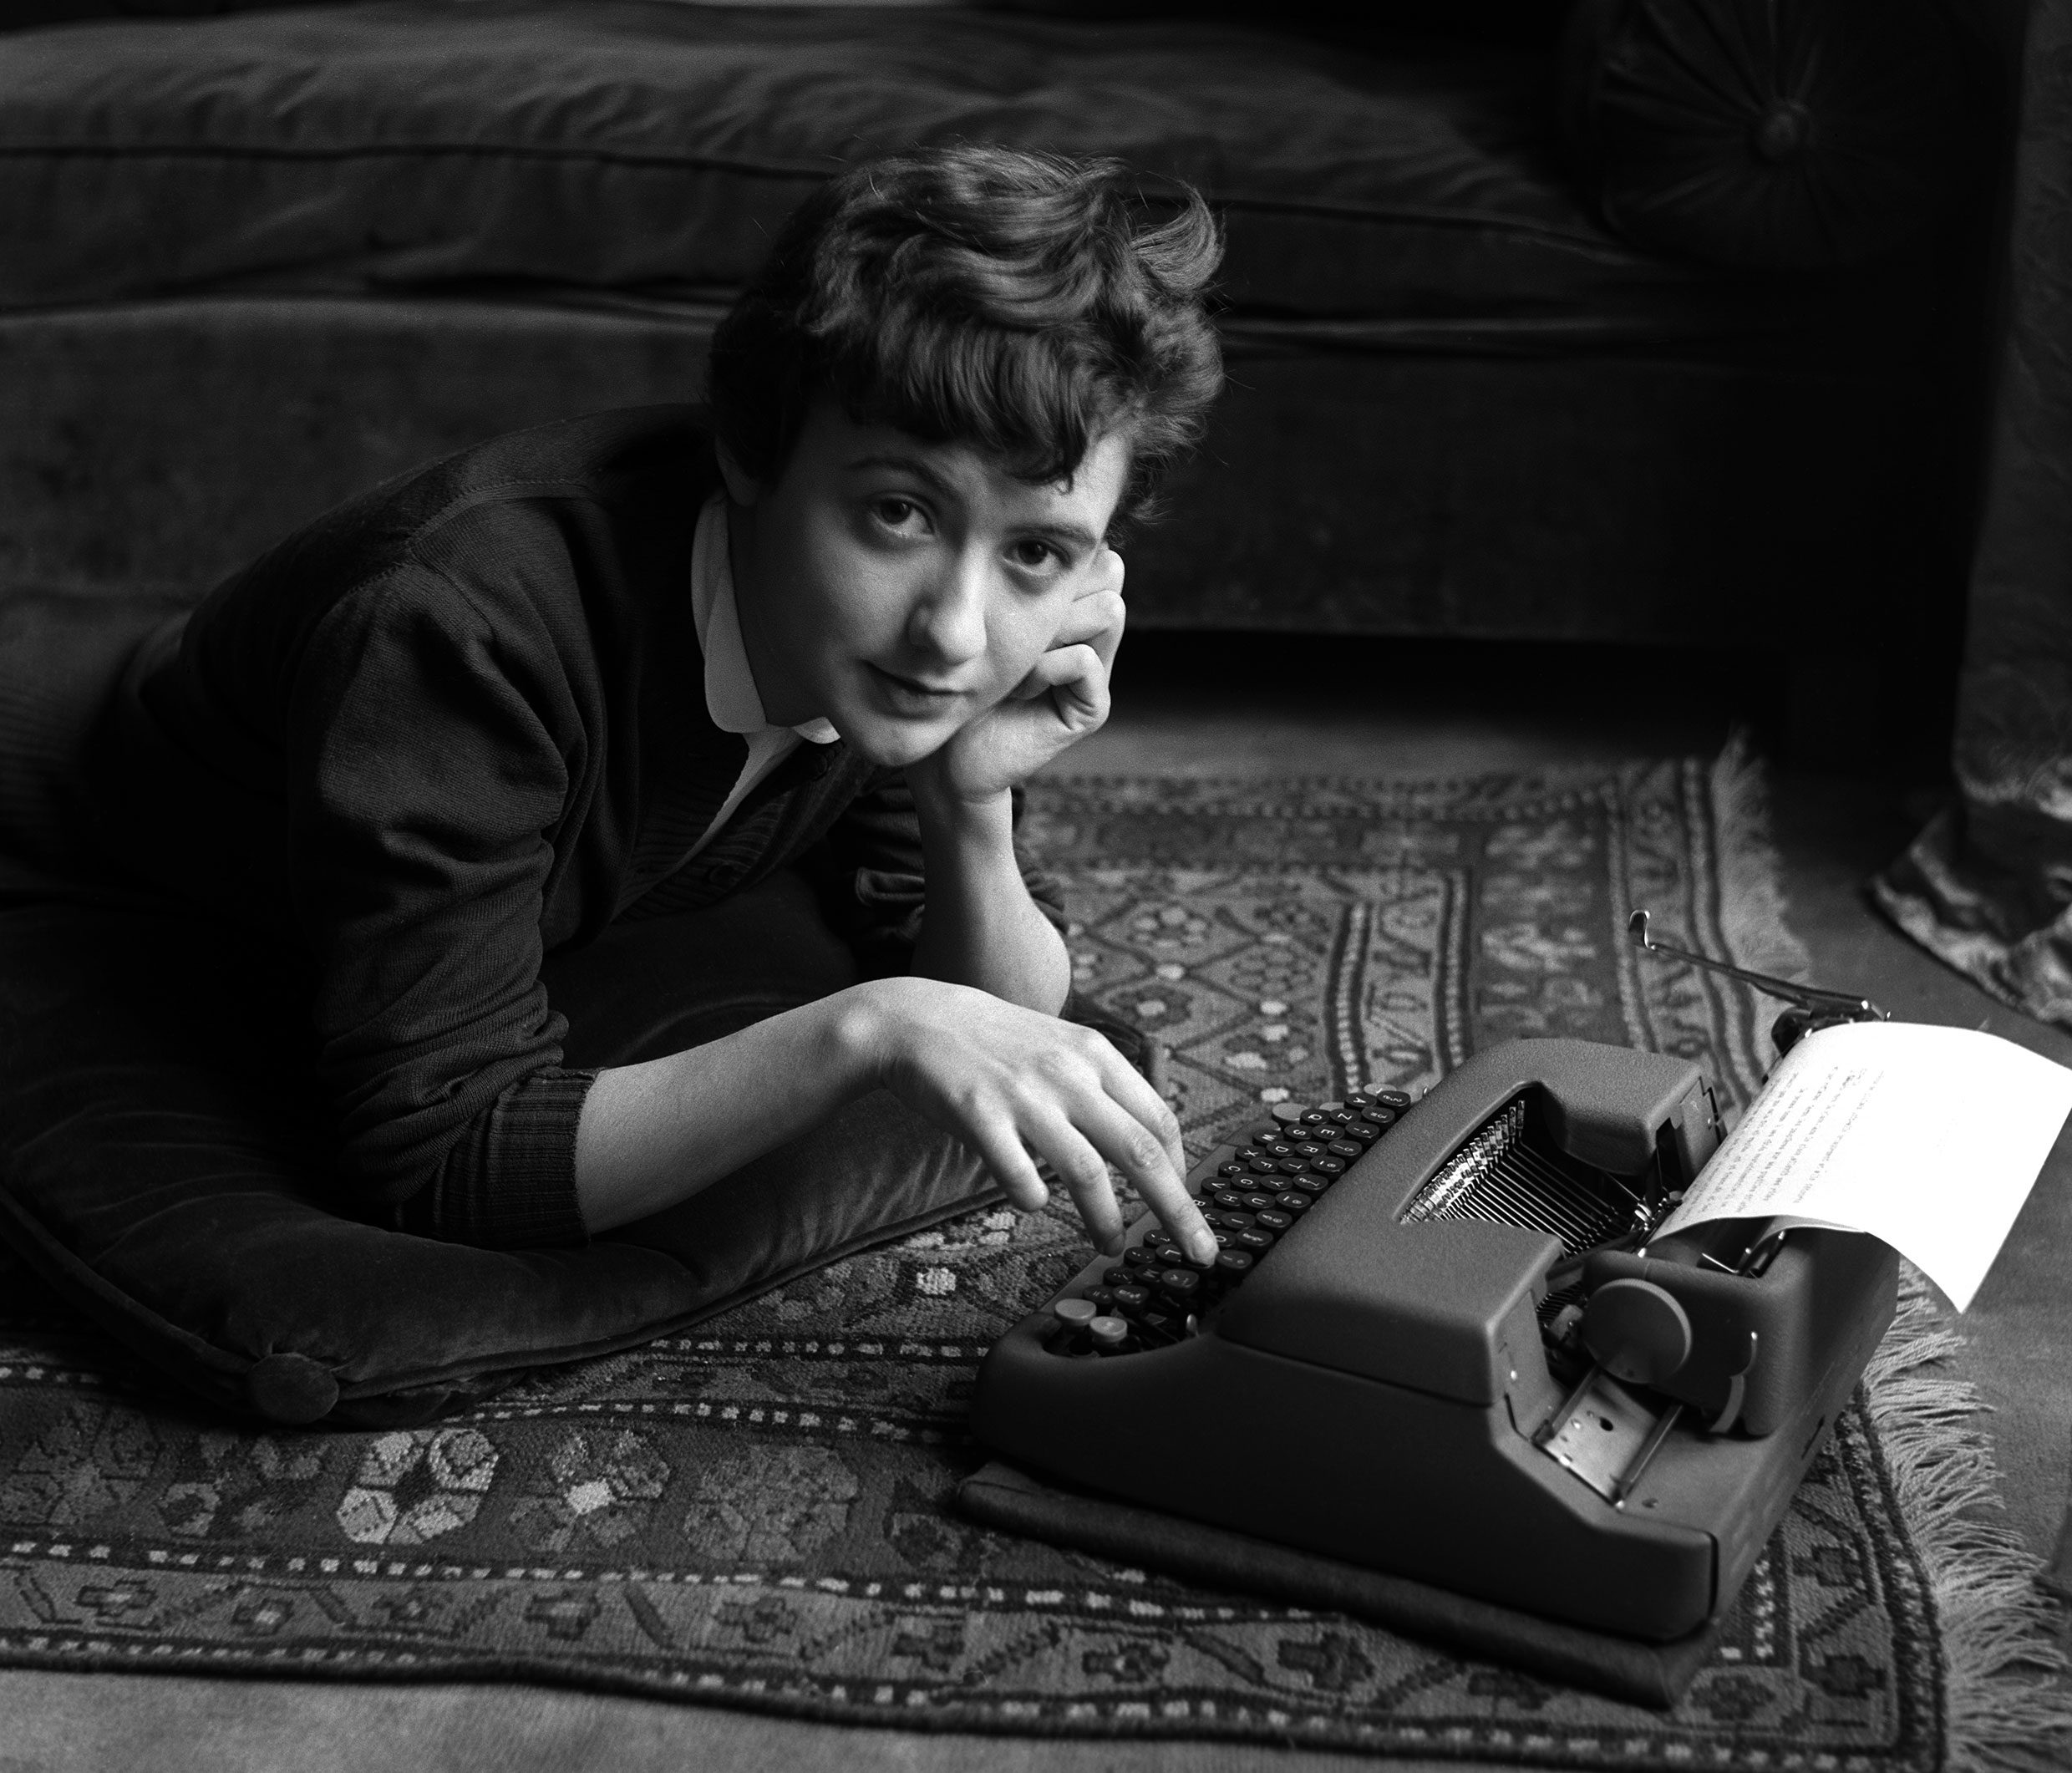 Sabine Weiss. Françoise Sagan en el momento de la publicación de su primera novela, "Bonjour, tristesse". París, 1954